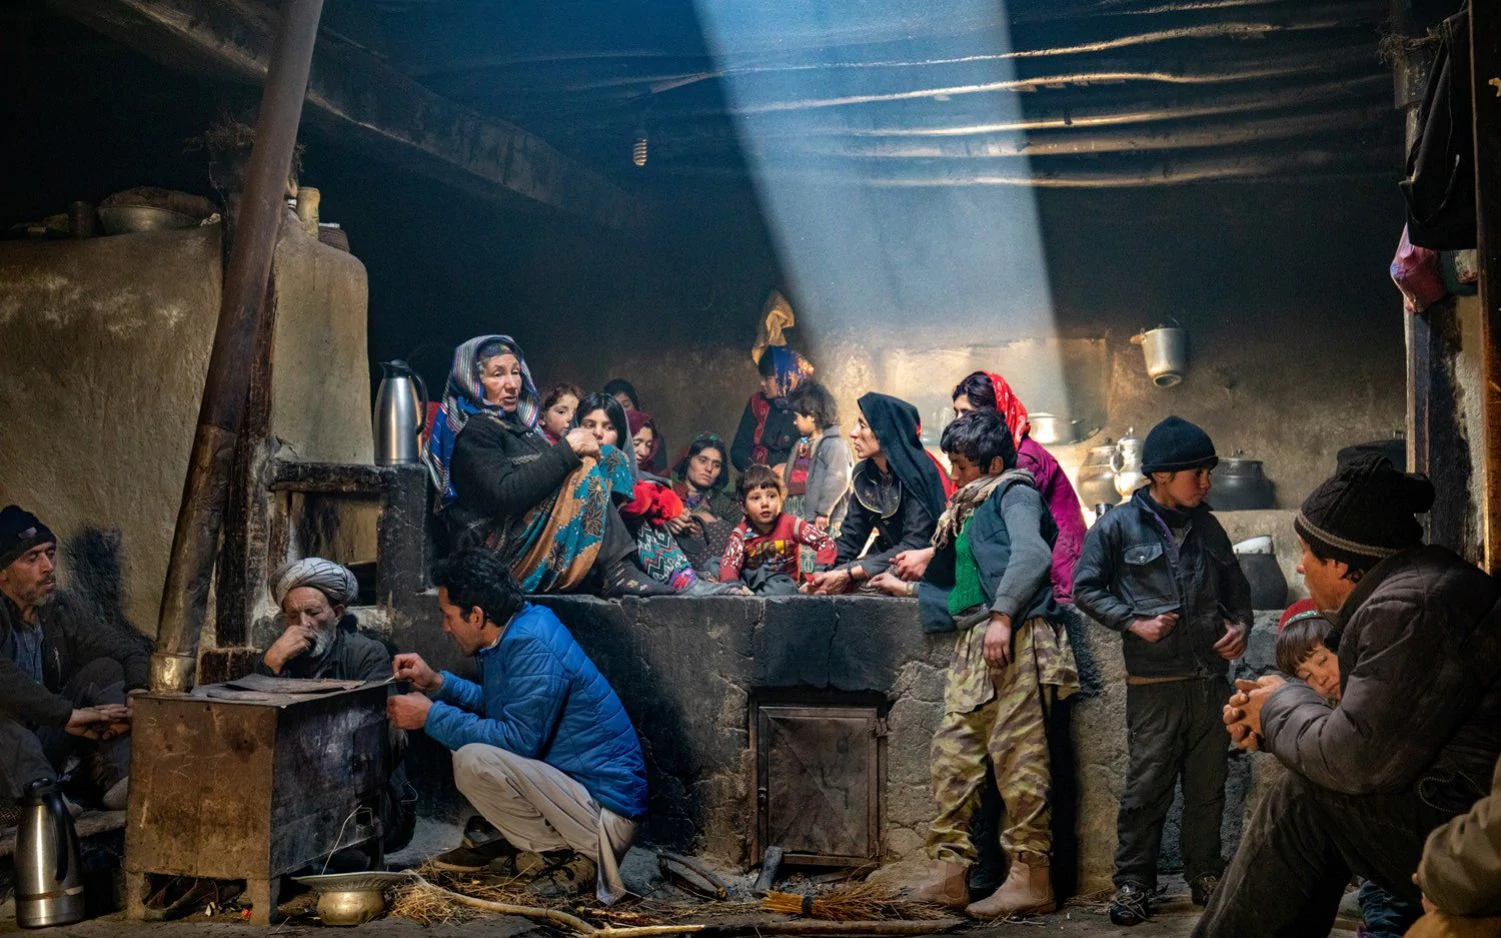 Особое упоминание в категории Люди мира, 2020. Семья в традиционной кухне, Ваханский коридор, провинция Бадахшан, Афганистан. Фотограф Йорген Йохансон